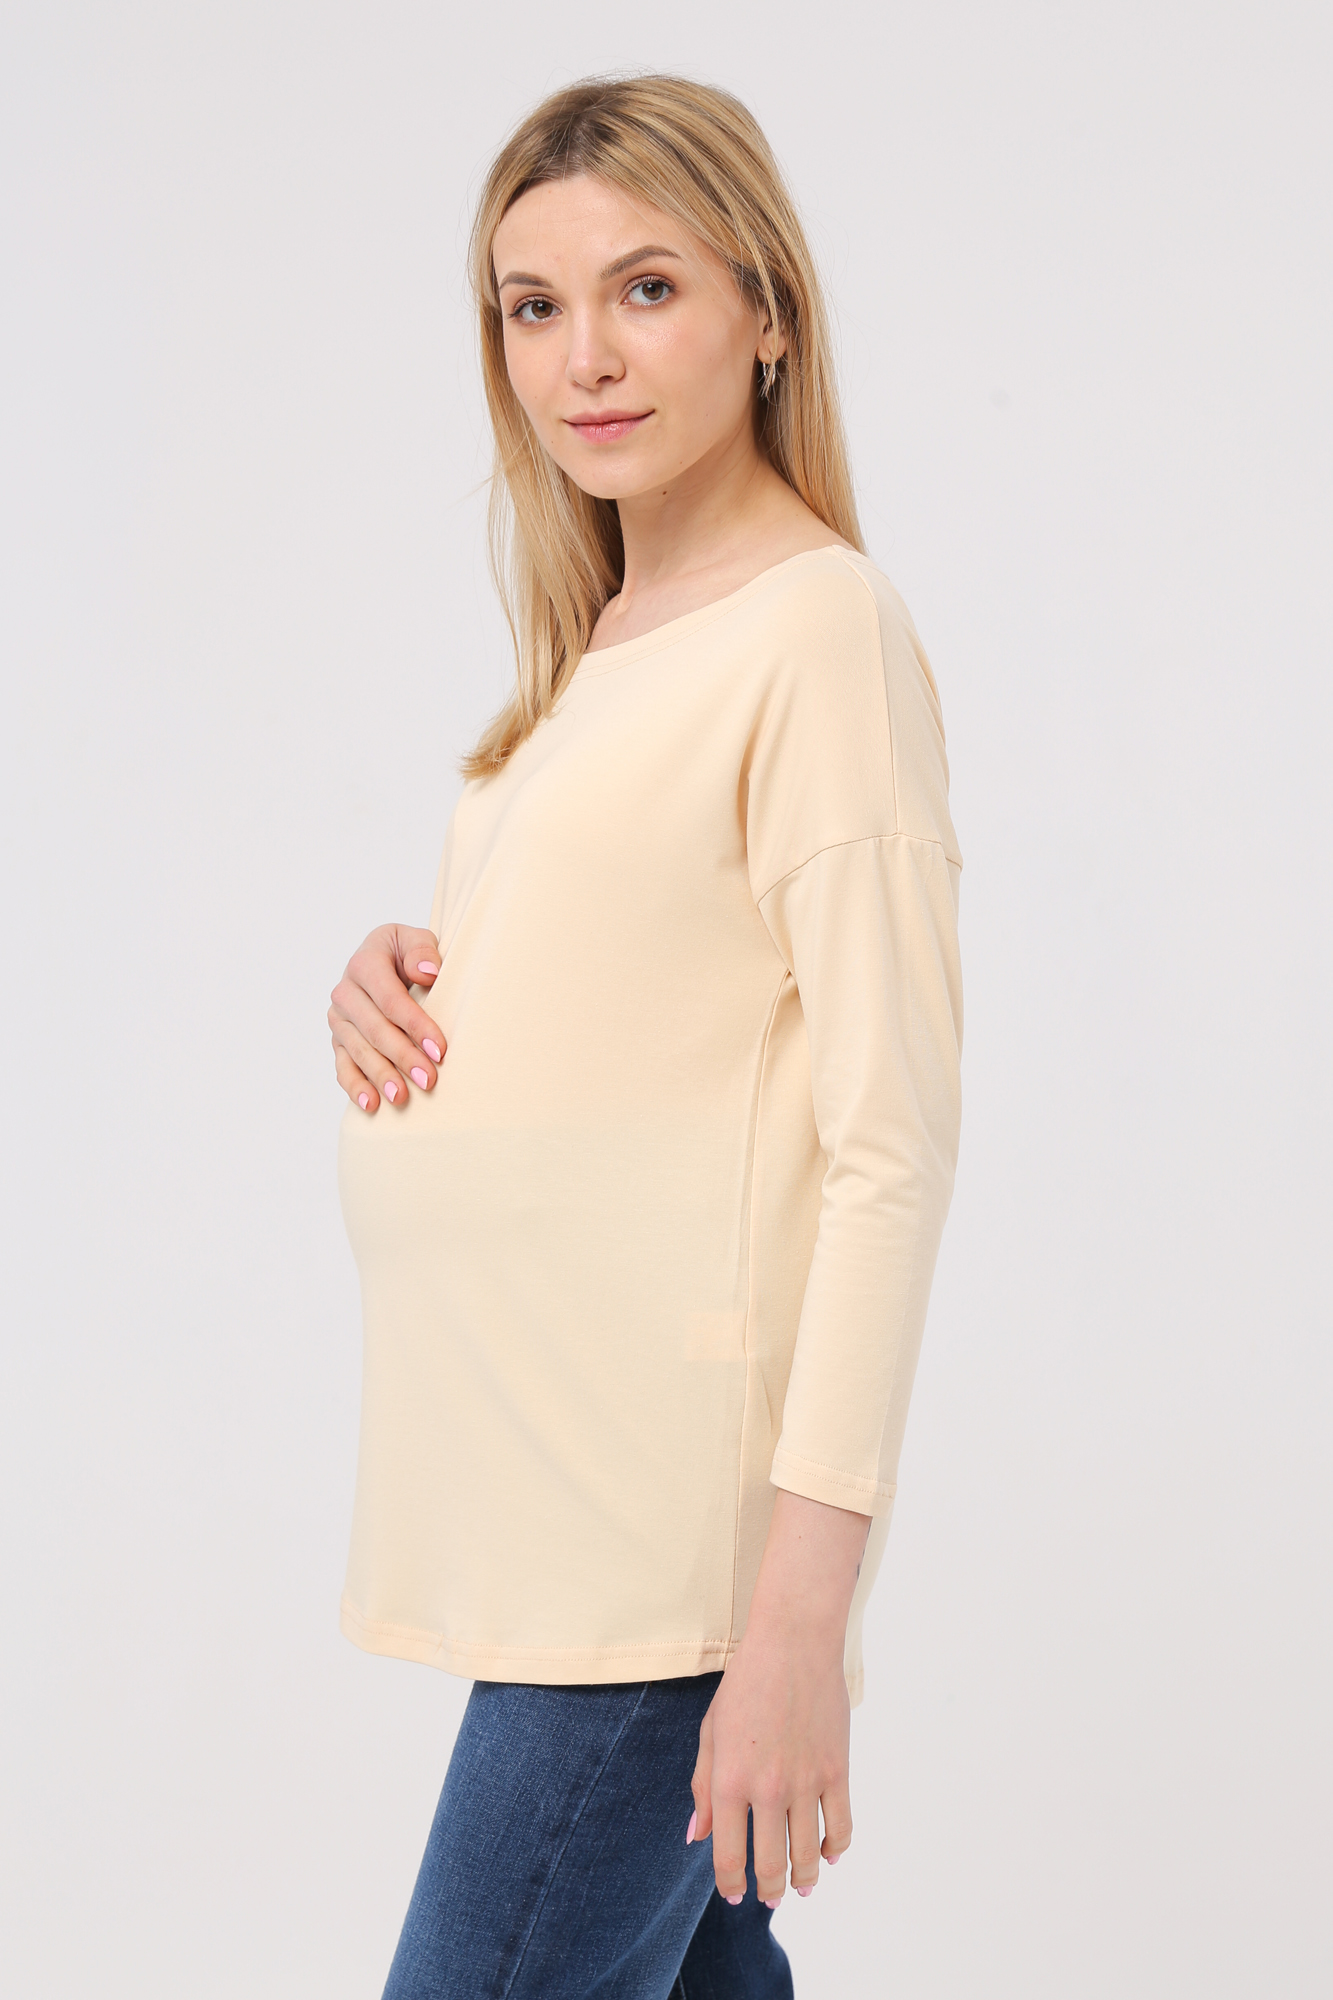 Лонгслив для беременных женский Mama's fantasy 1709MF желтый 44 RU